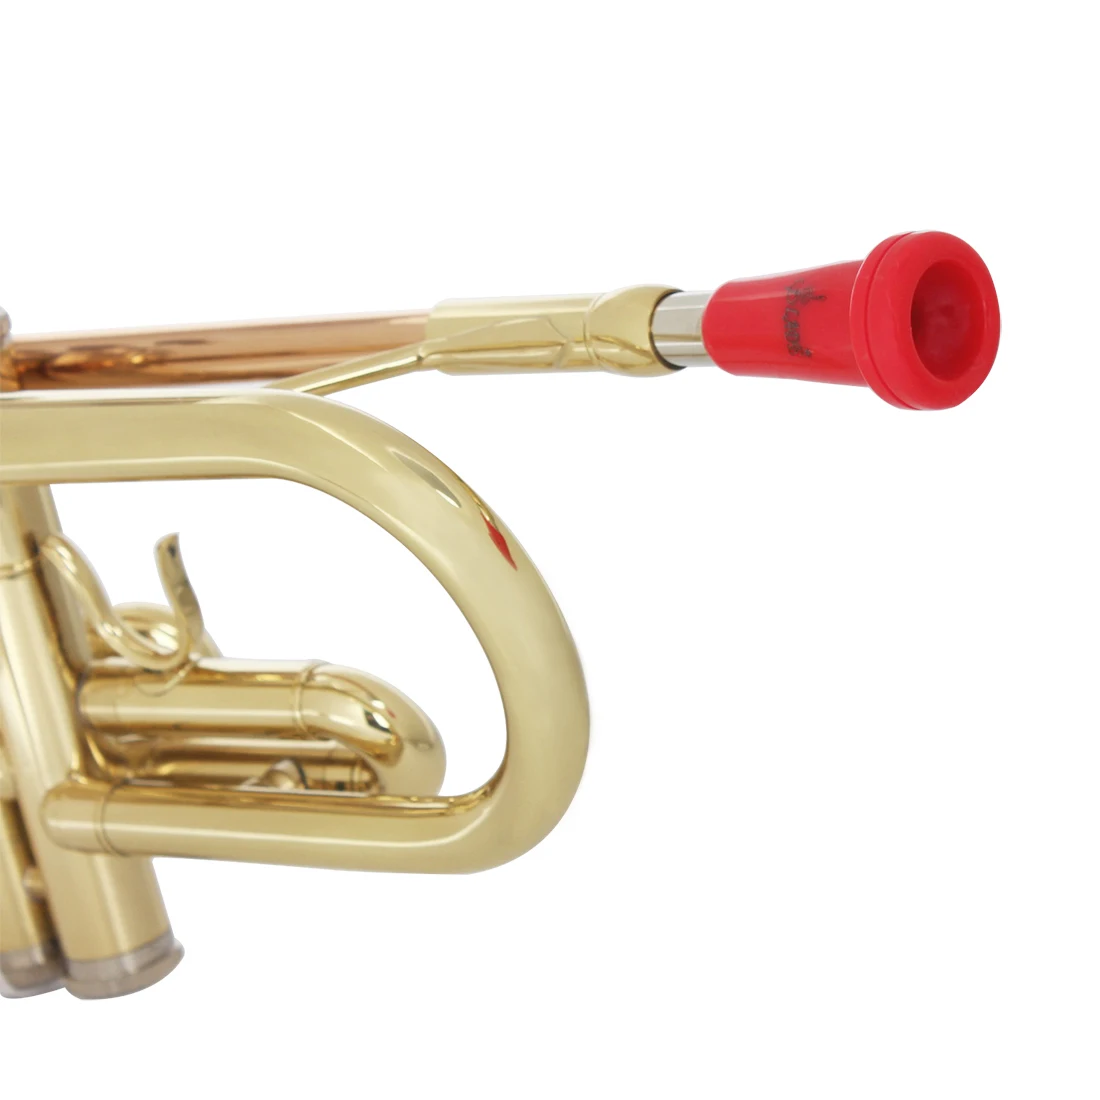 Загубник для трубы Металл ABS загубник для трубы для Bach музыкальная труба Инструменты Запчасти